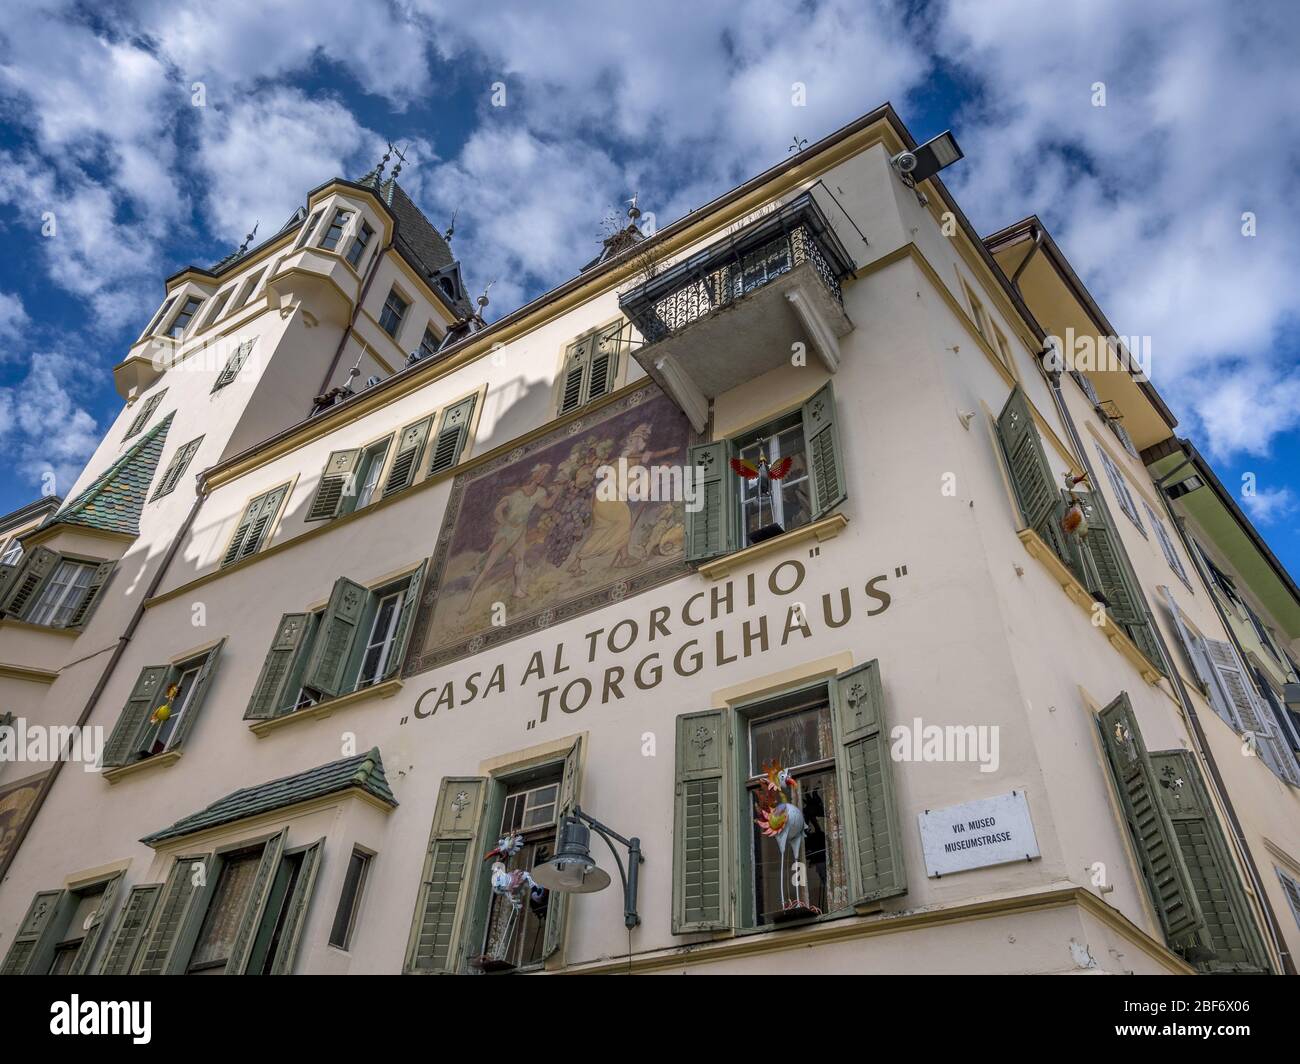 Casa al Torchio, Piazza Erbe in Bolzano, Italy, South Tyrol, Trentino, Bolzano Stock Photo